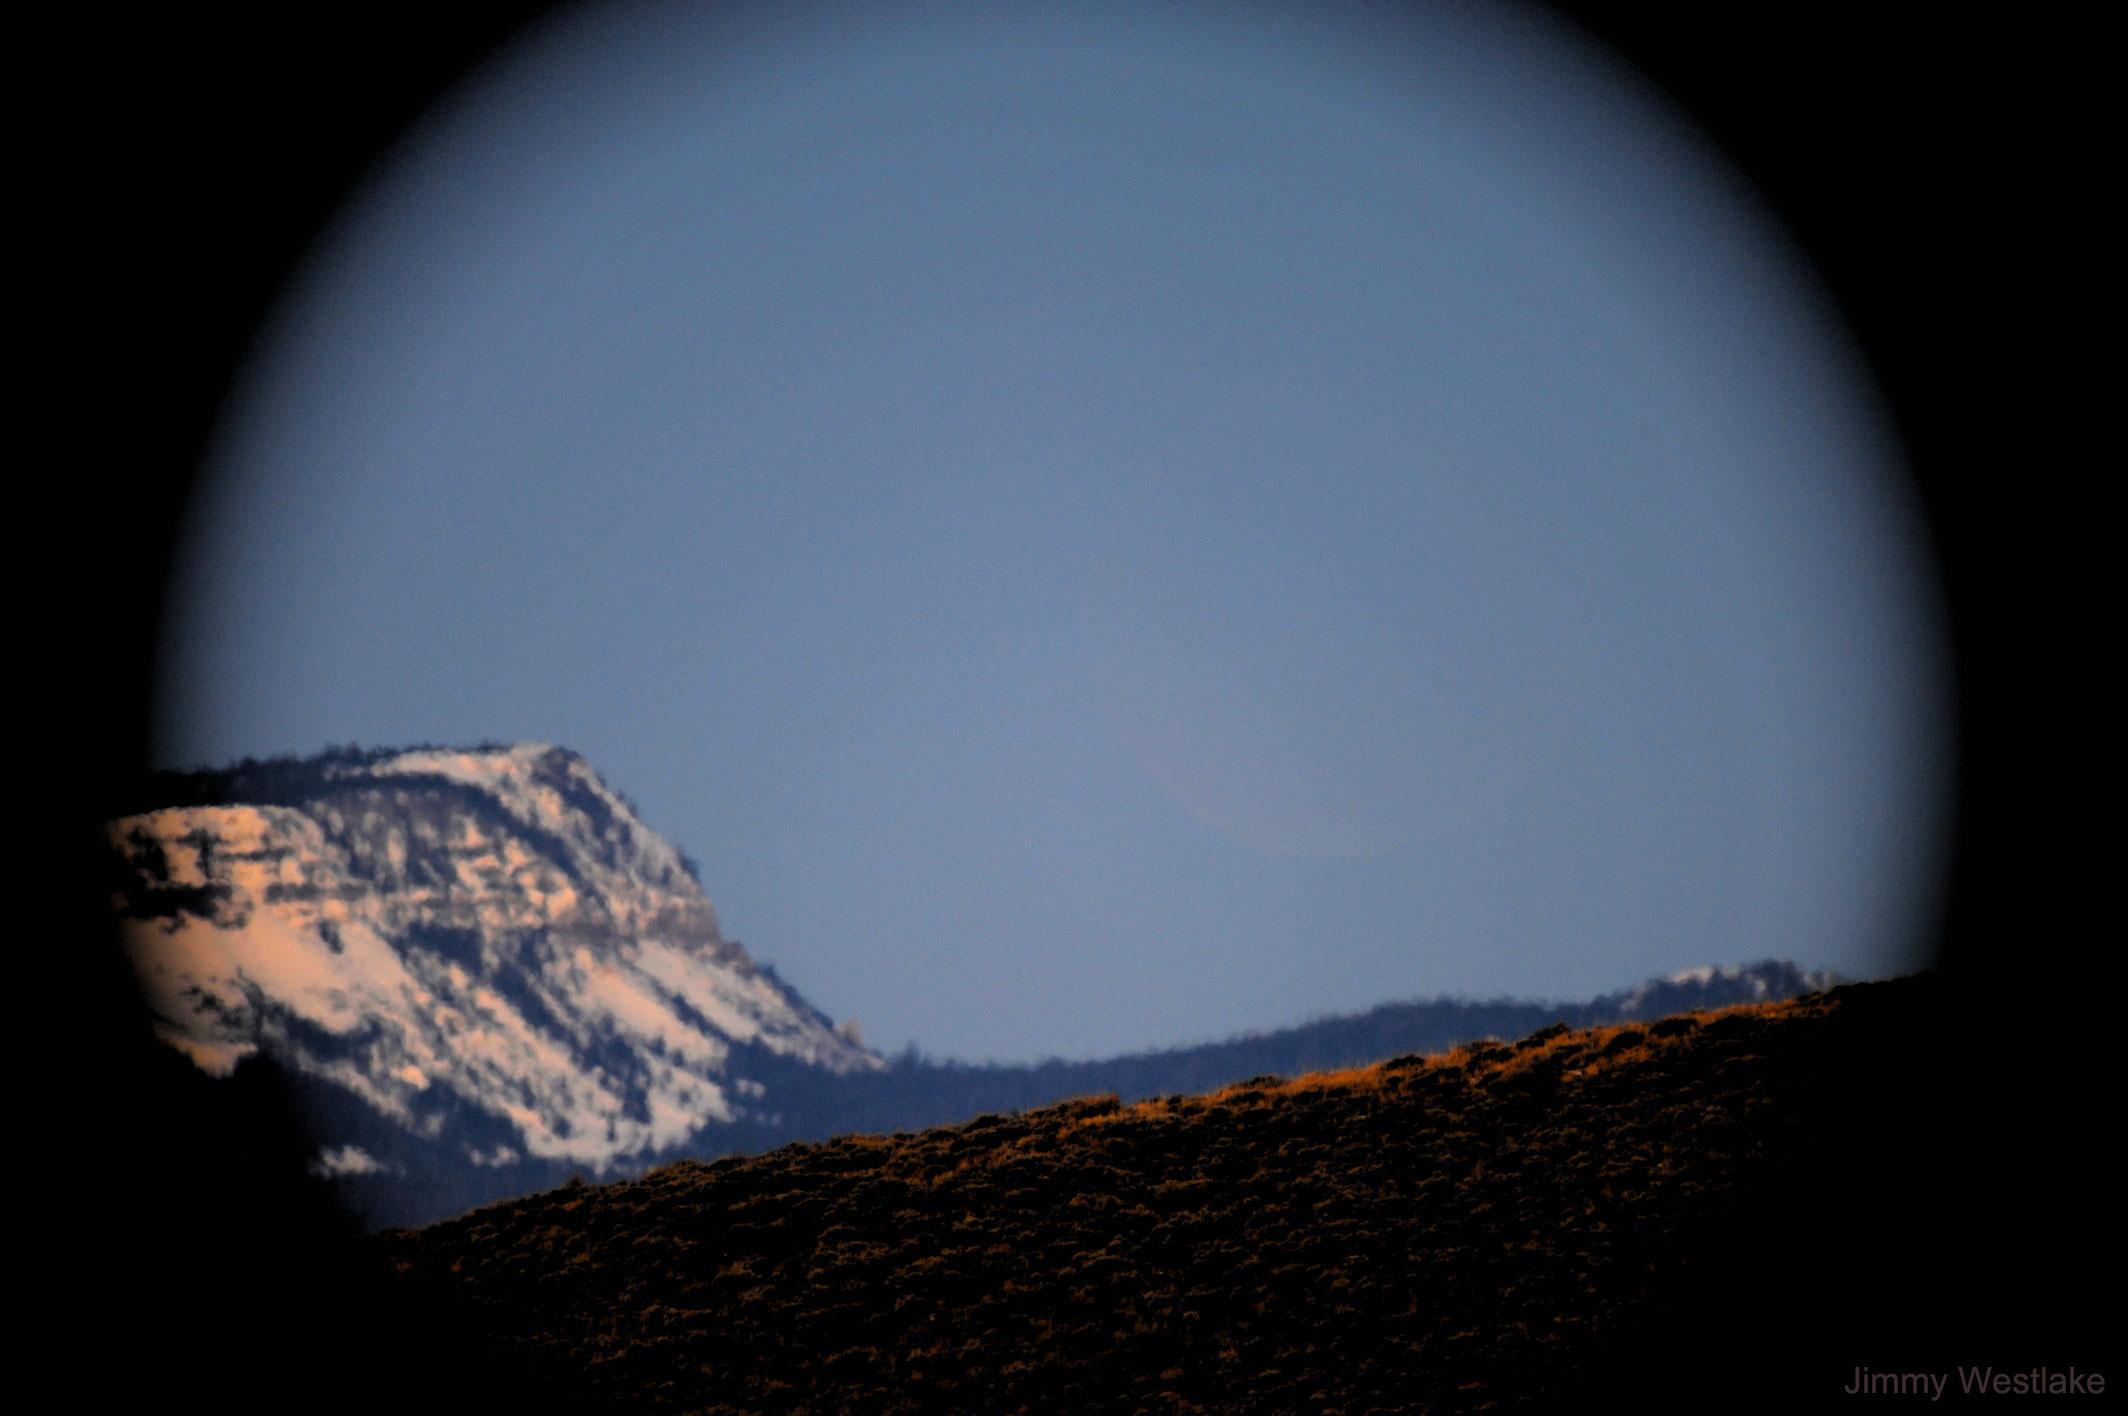 صورة للأفق وبالكاد تمكن رؤية القمر كبدر خافت جدّاً فوق بعض الجبال على خلفيّة السماء الزرقاء.